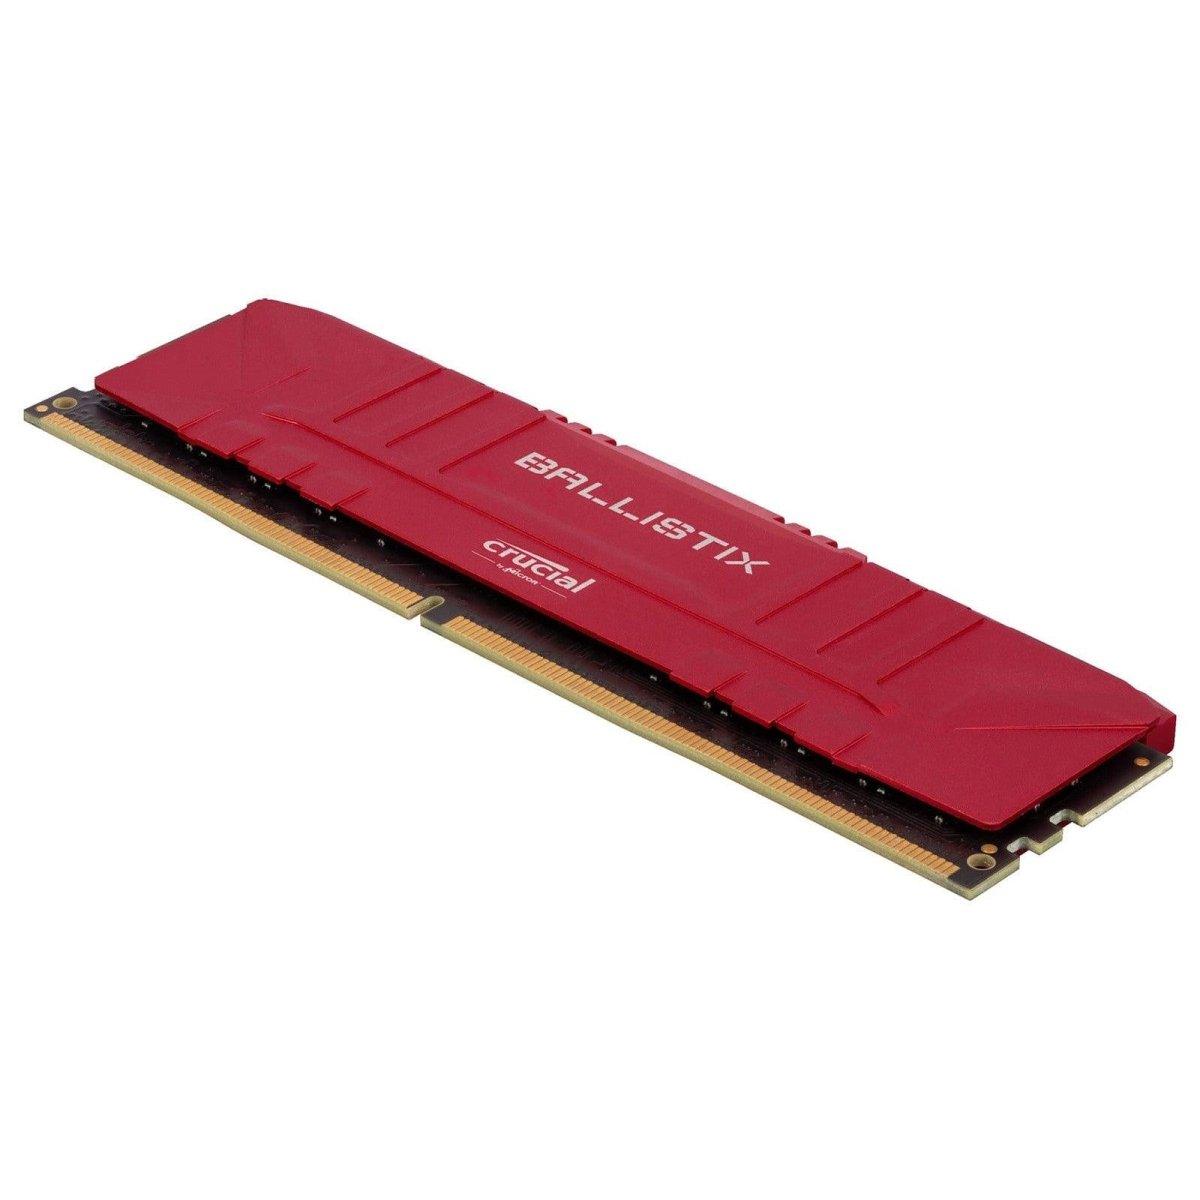 Crucial Ballistix rouge 16 Go (2 x 8 Go)  DDR4 3000 MHz CL15maroc Prix Barrette Memoire ram pas cher - smartmarket.ma